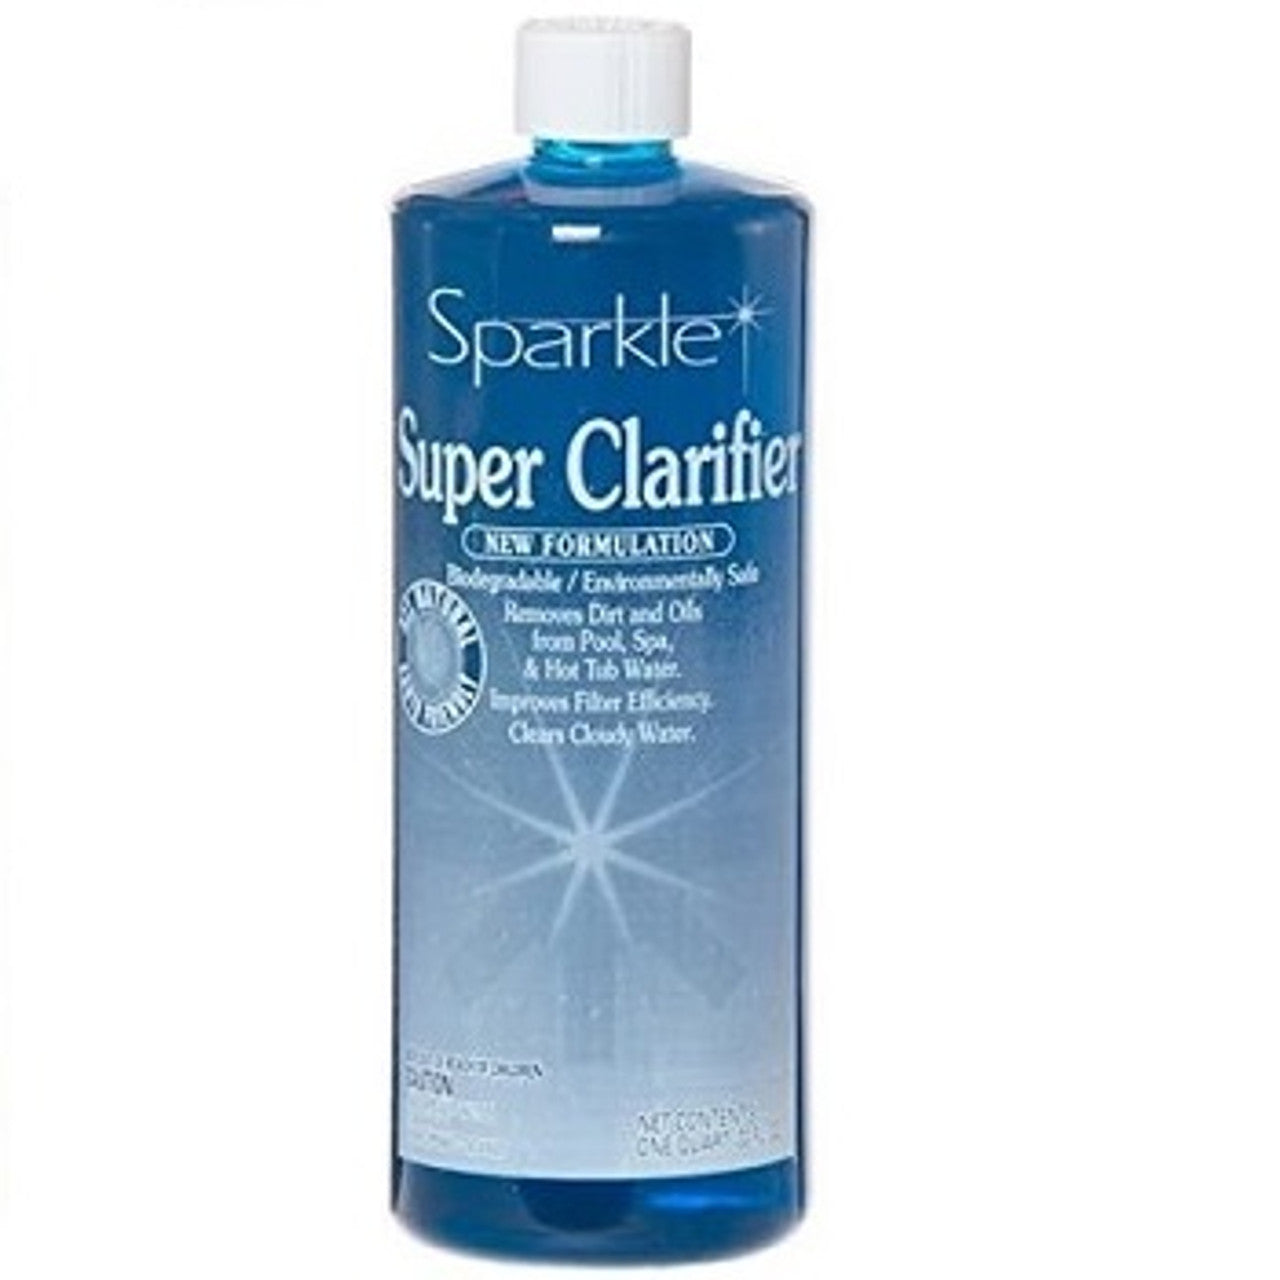 Sparkle Super Clarifier - 1 qt.